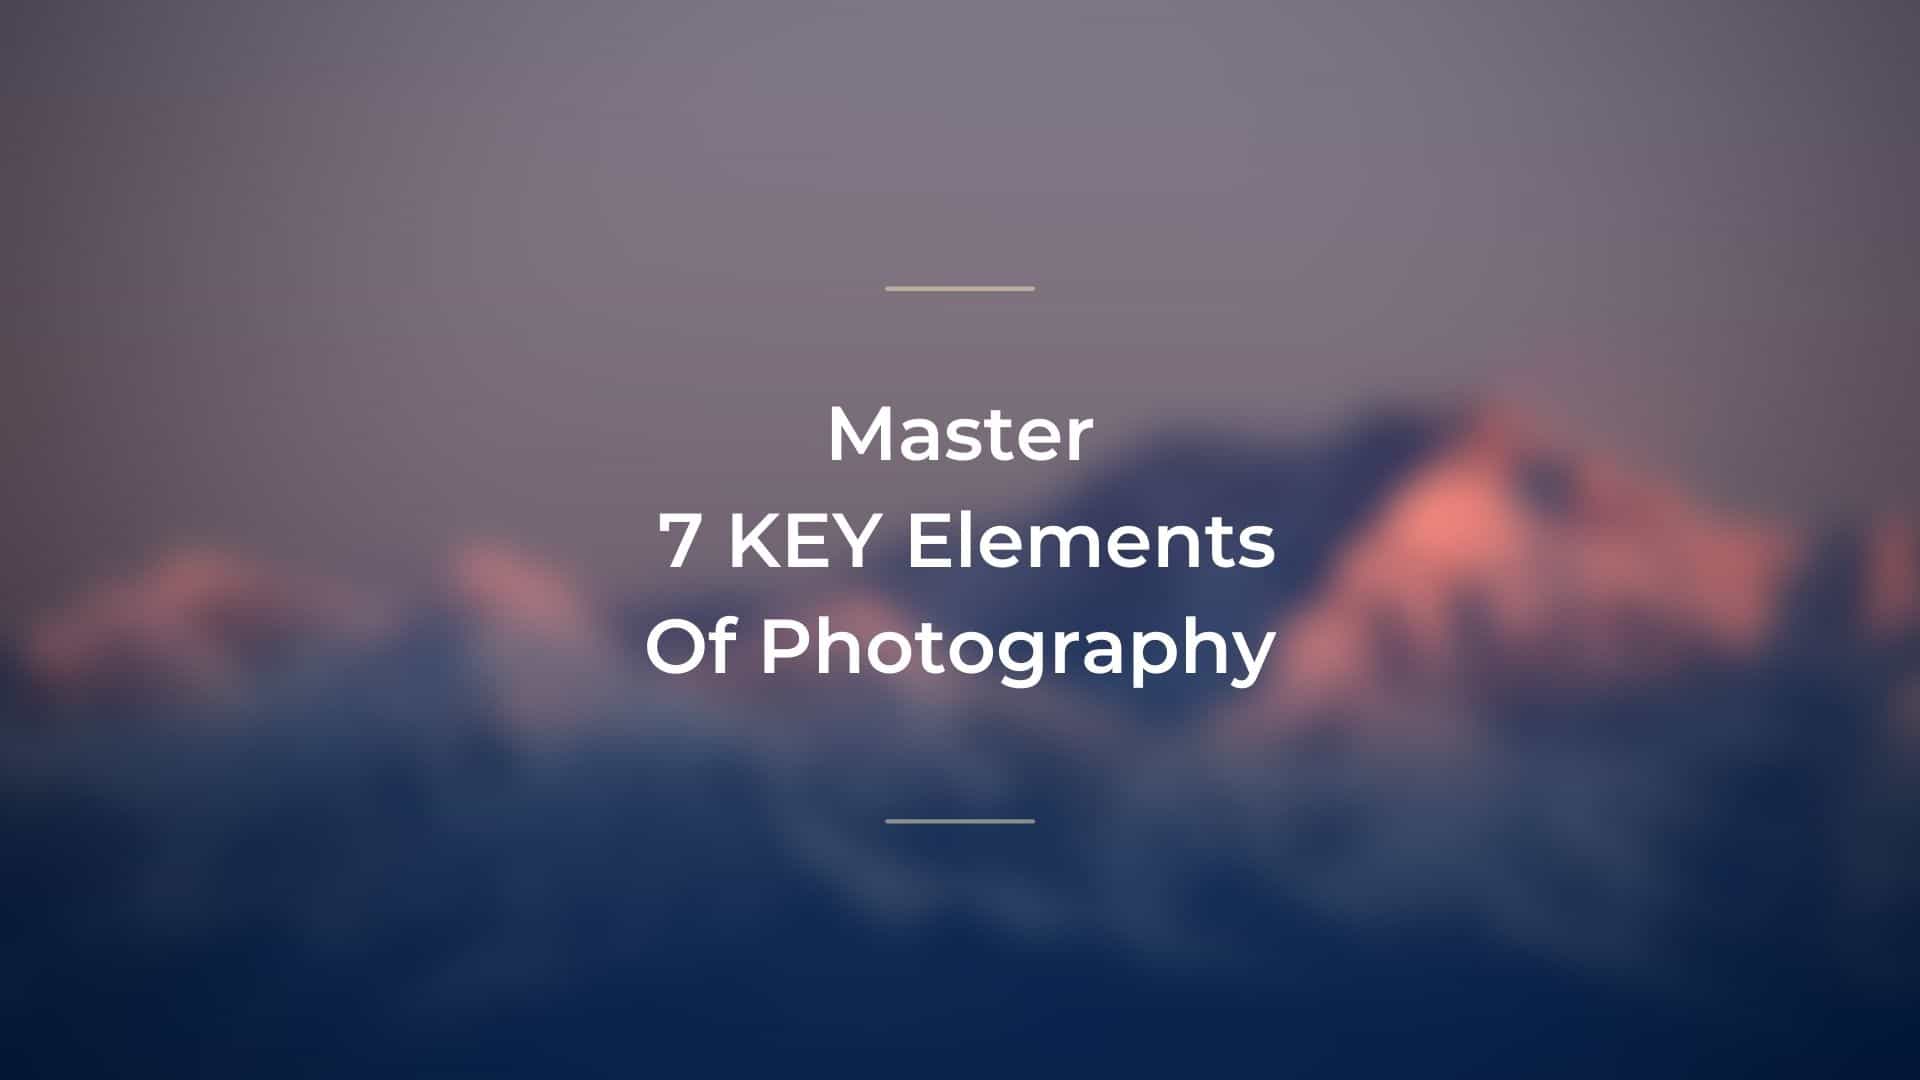 Master KEY Elements Of Photography